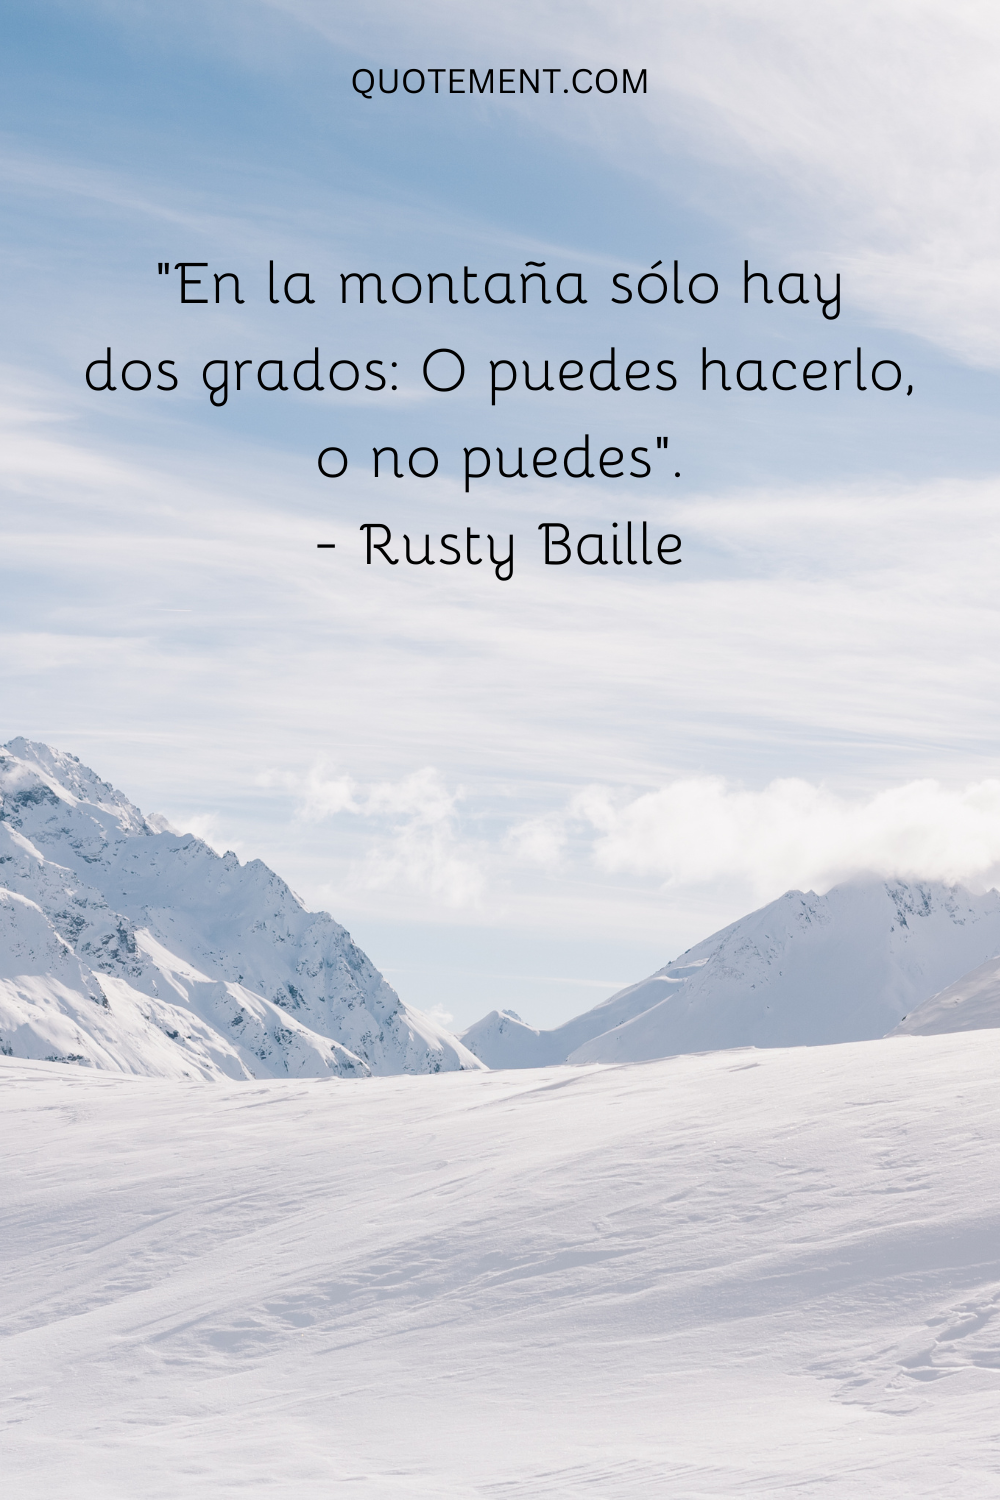 "En la montaña, sólo hay dos grados Puedes hacerlo o no puedes". - Rusty Baille